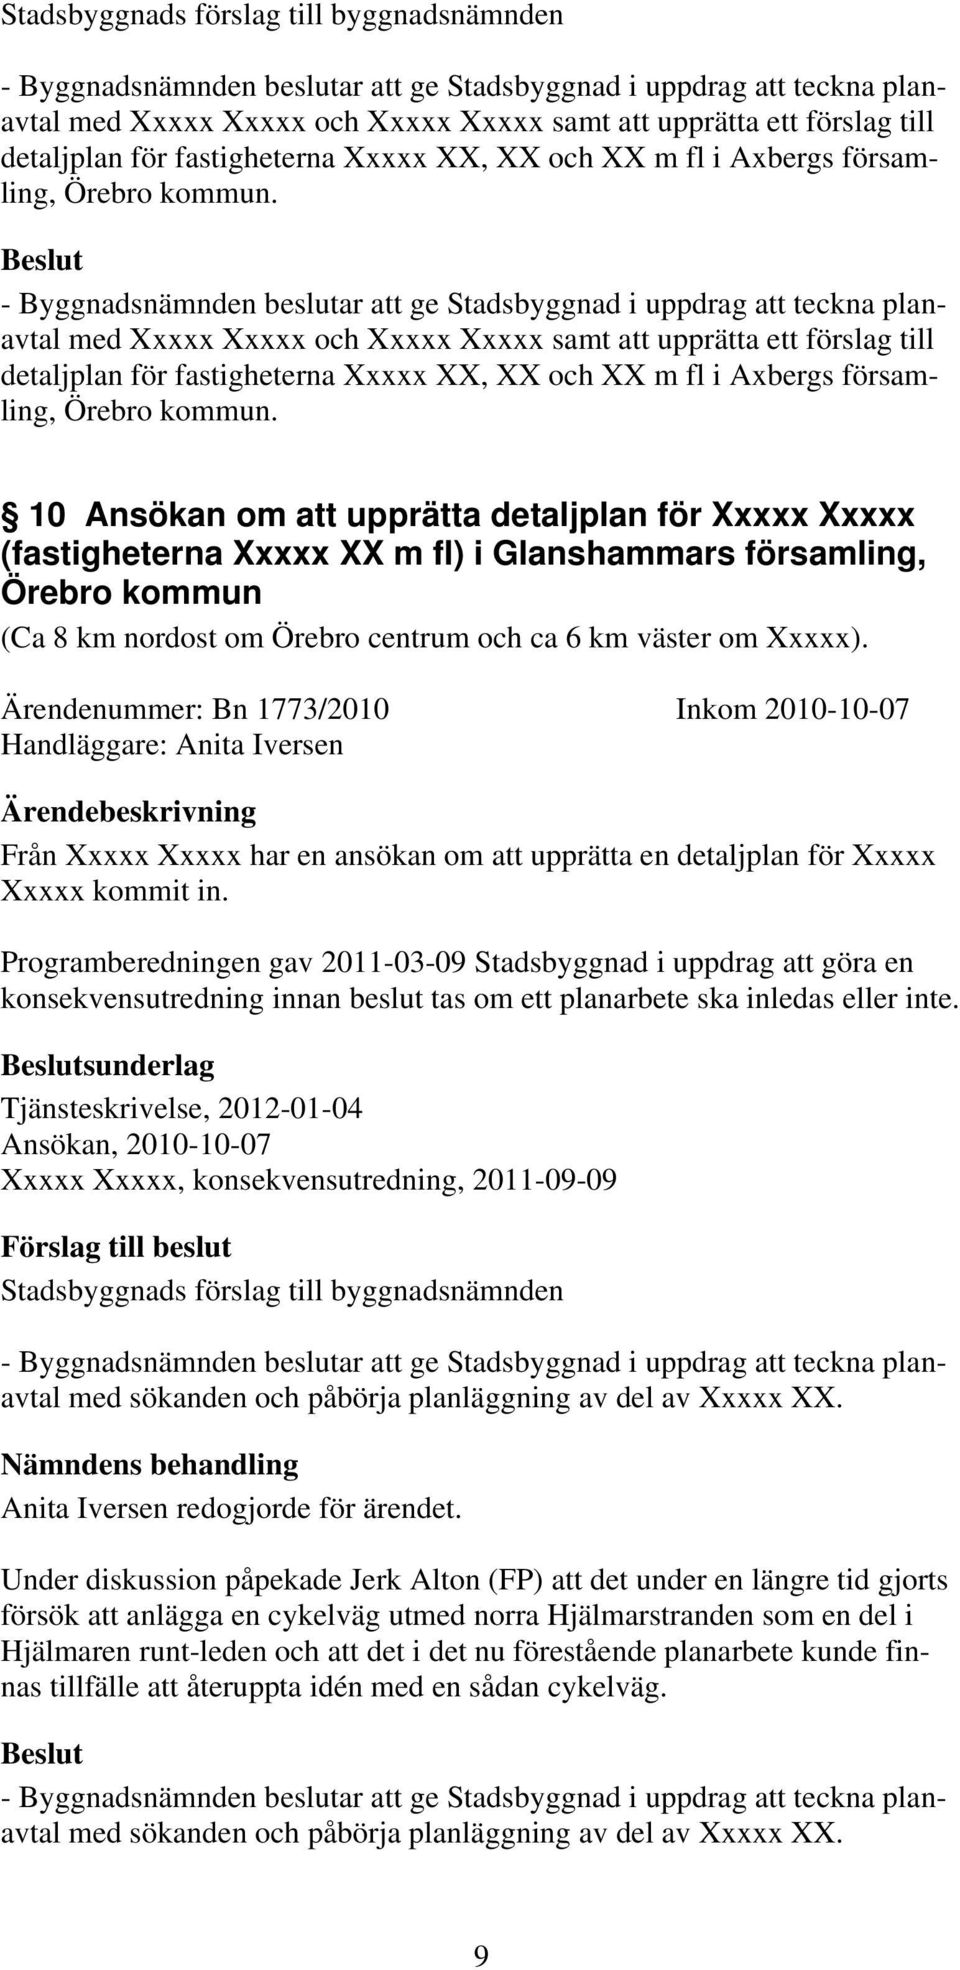 10 Ansökan om att upprätta detaljplan för Xxxxx Xxxxx (fastigheterna Xxxxx XX m fl) i Glanshammars församling, Örebro kommun (Ca 8 km nordost om Örebro centrum och ca 6 km väster om Xxxxx).